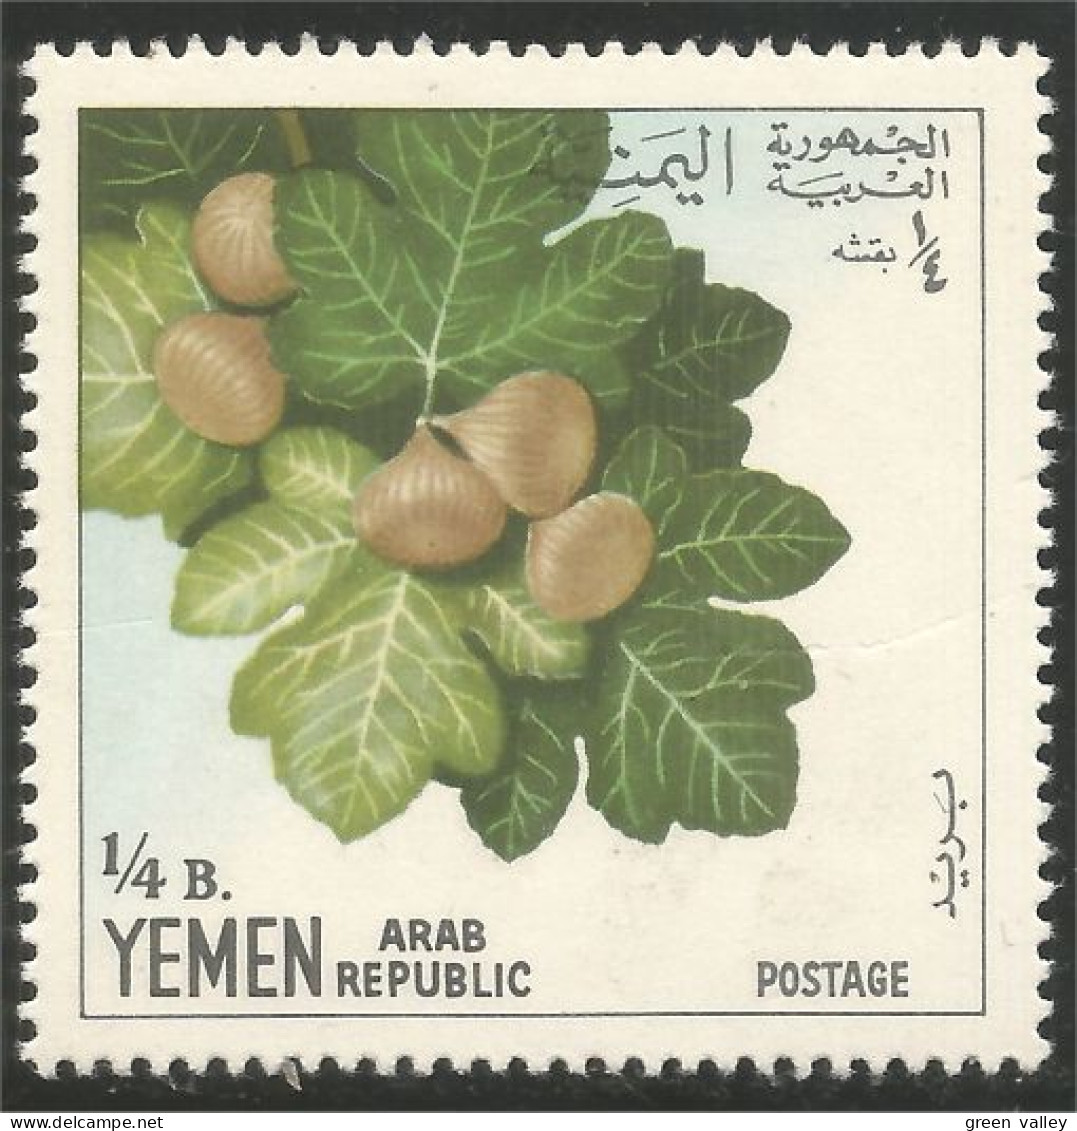 FR-30b Yemen Fruits Figue Fig Feige Figura Higo Afb MH * Neuf CH Légère - Alimentation